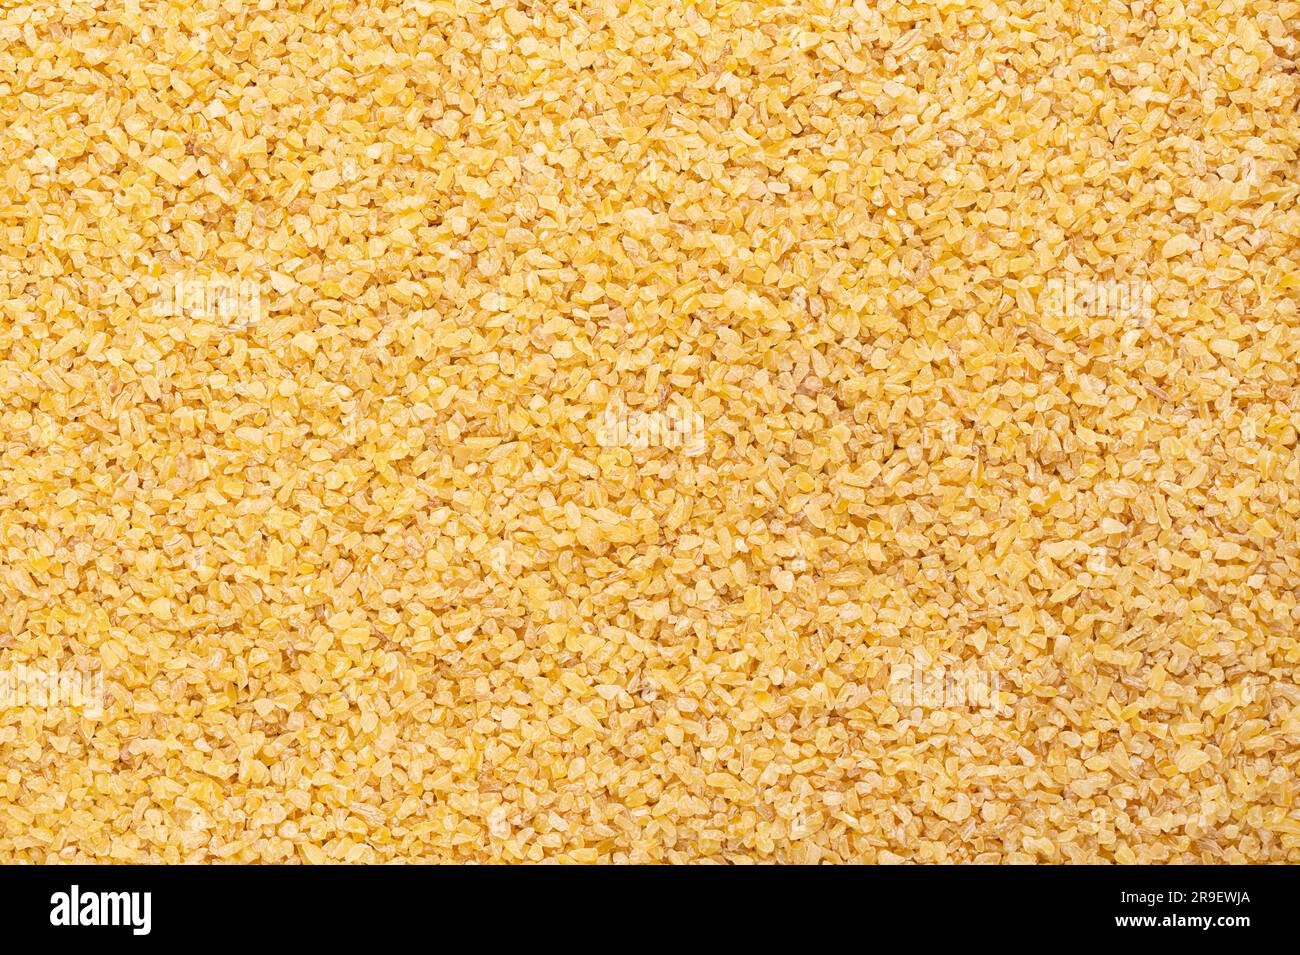 Bulgur grossolano, chiamato anche burghul, superficie, dall'alto. Prodotti alimentari a base di grano screpolato e parboiled e ingrediente comune nelle cucine dell'Asia occidentale. Foto Stock